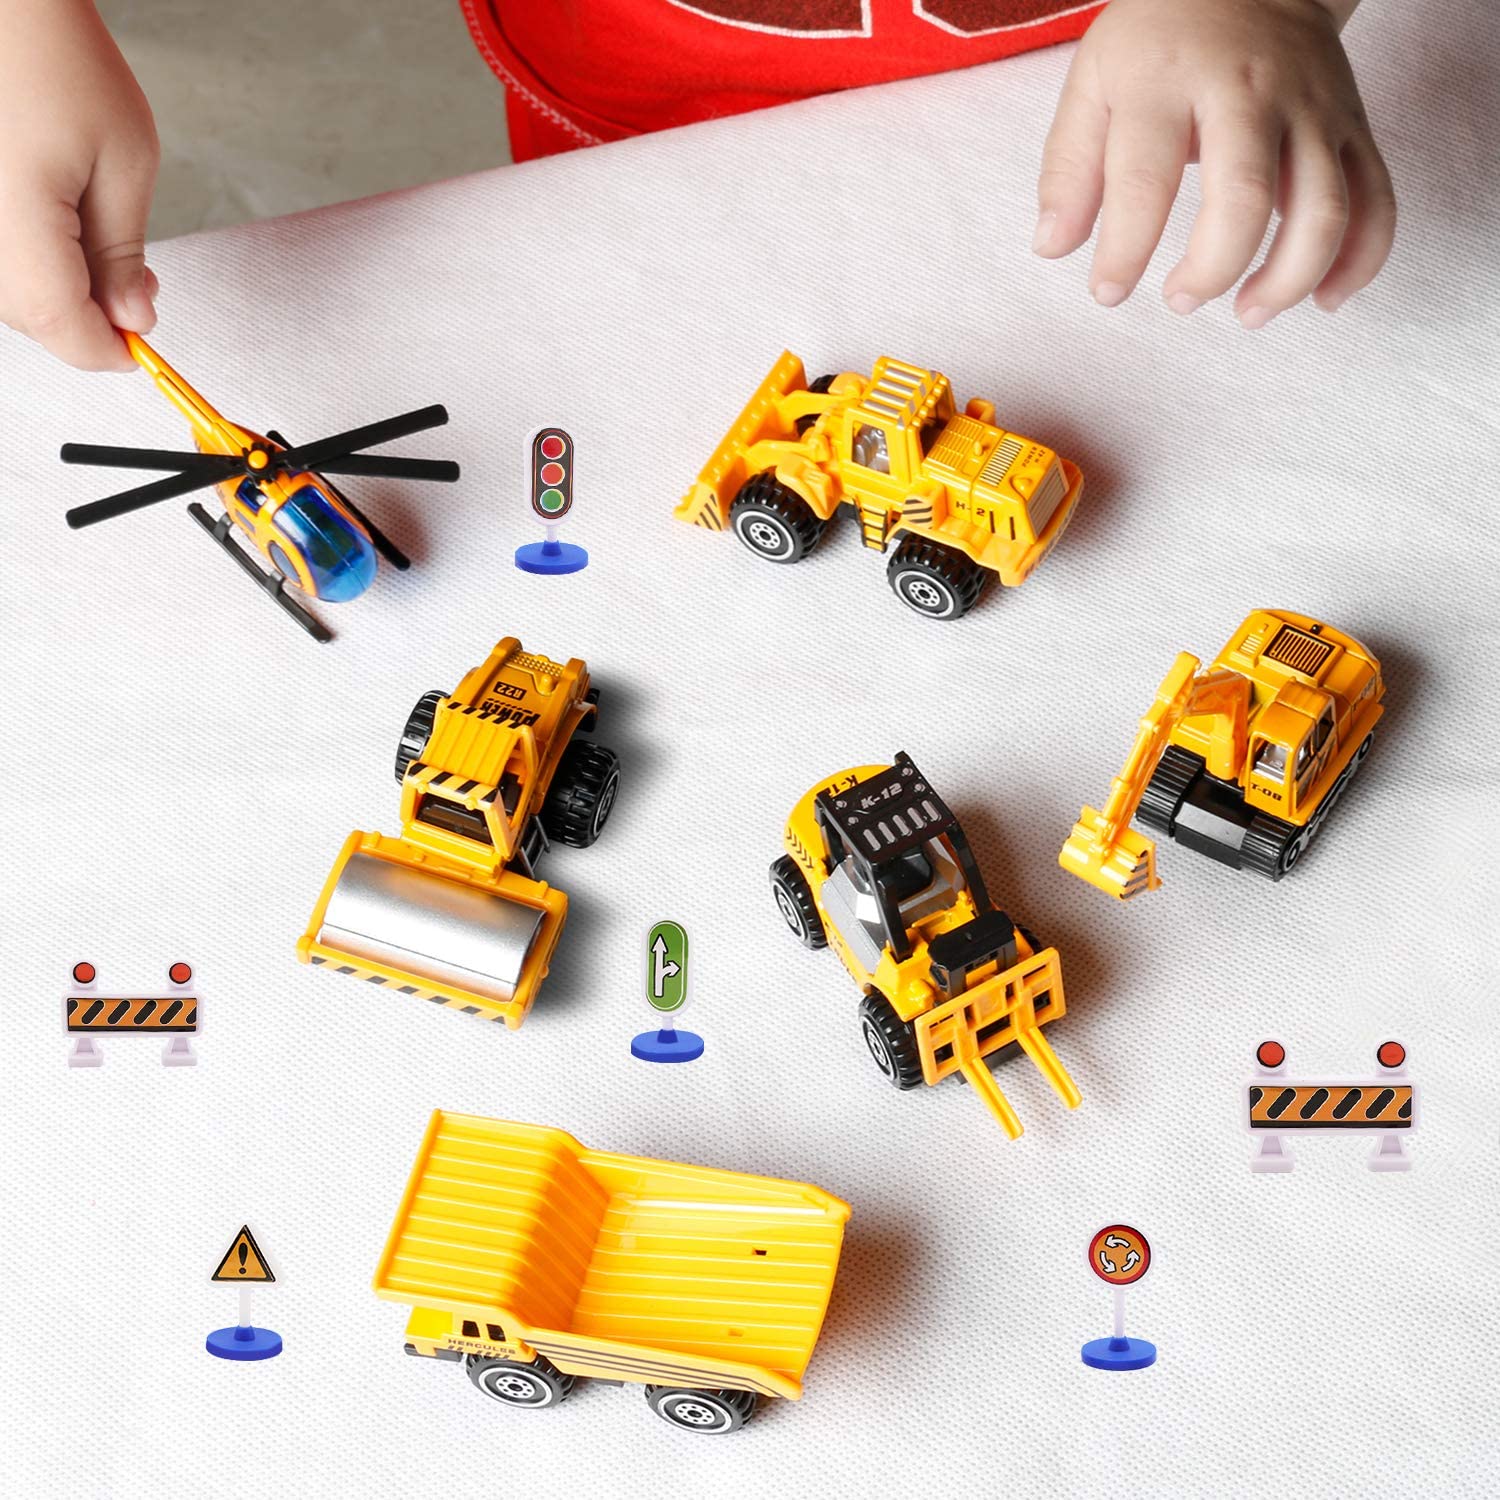 Los juguetes de jardín más bonitos y baratos: coches de construcción Sanlebi Childom